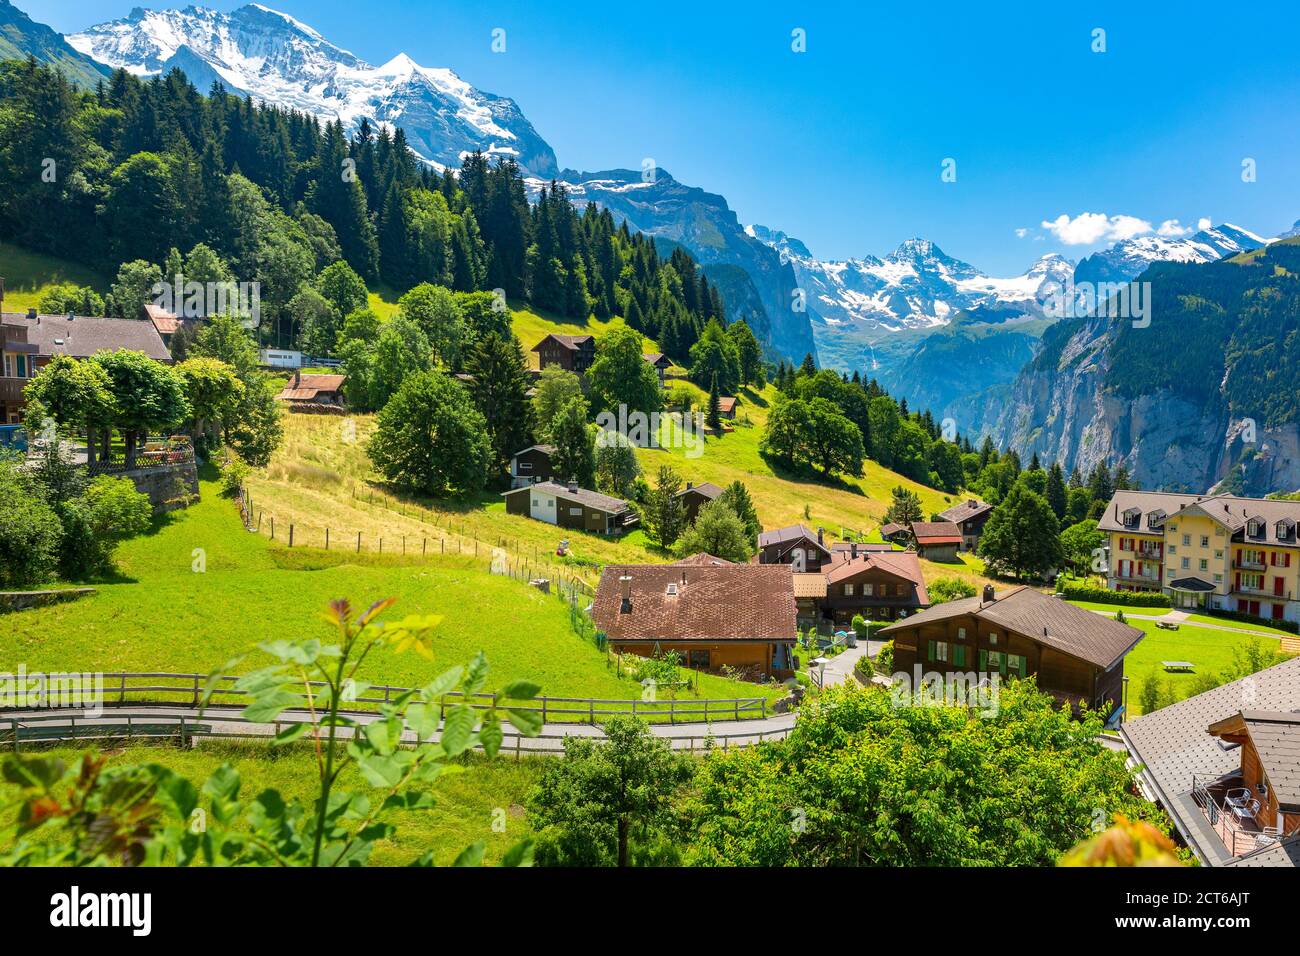 Meraviglioso villaggio di montagna senza auto Wengen, Oberland Bernese, Svizzera. Il Jungfrau è visibile sullo sfondo Foto Stock